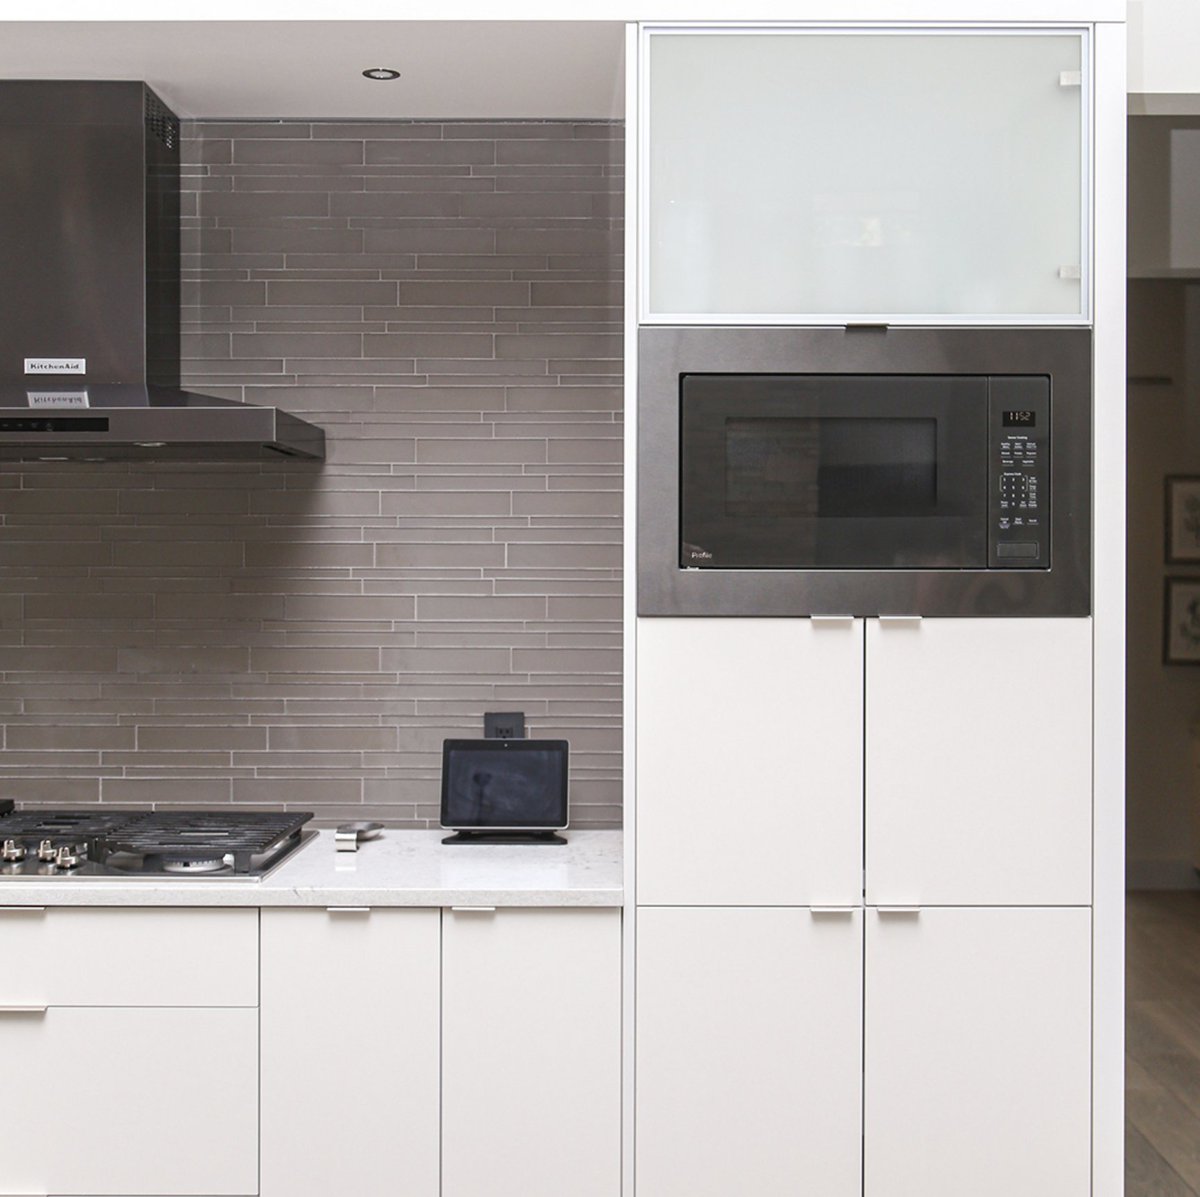 Modern homes need modern kitchens. Clean, sleek, and simple.

#elitecabinetstulsa
#tulsa
#tulsadesign
#interiordesign
#moderndesign
#moderncabinets
#kitchencabinets
#loveyourkitchen
#eurostyle
#kitchendesign
#mio